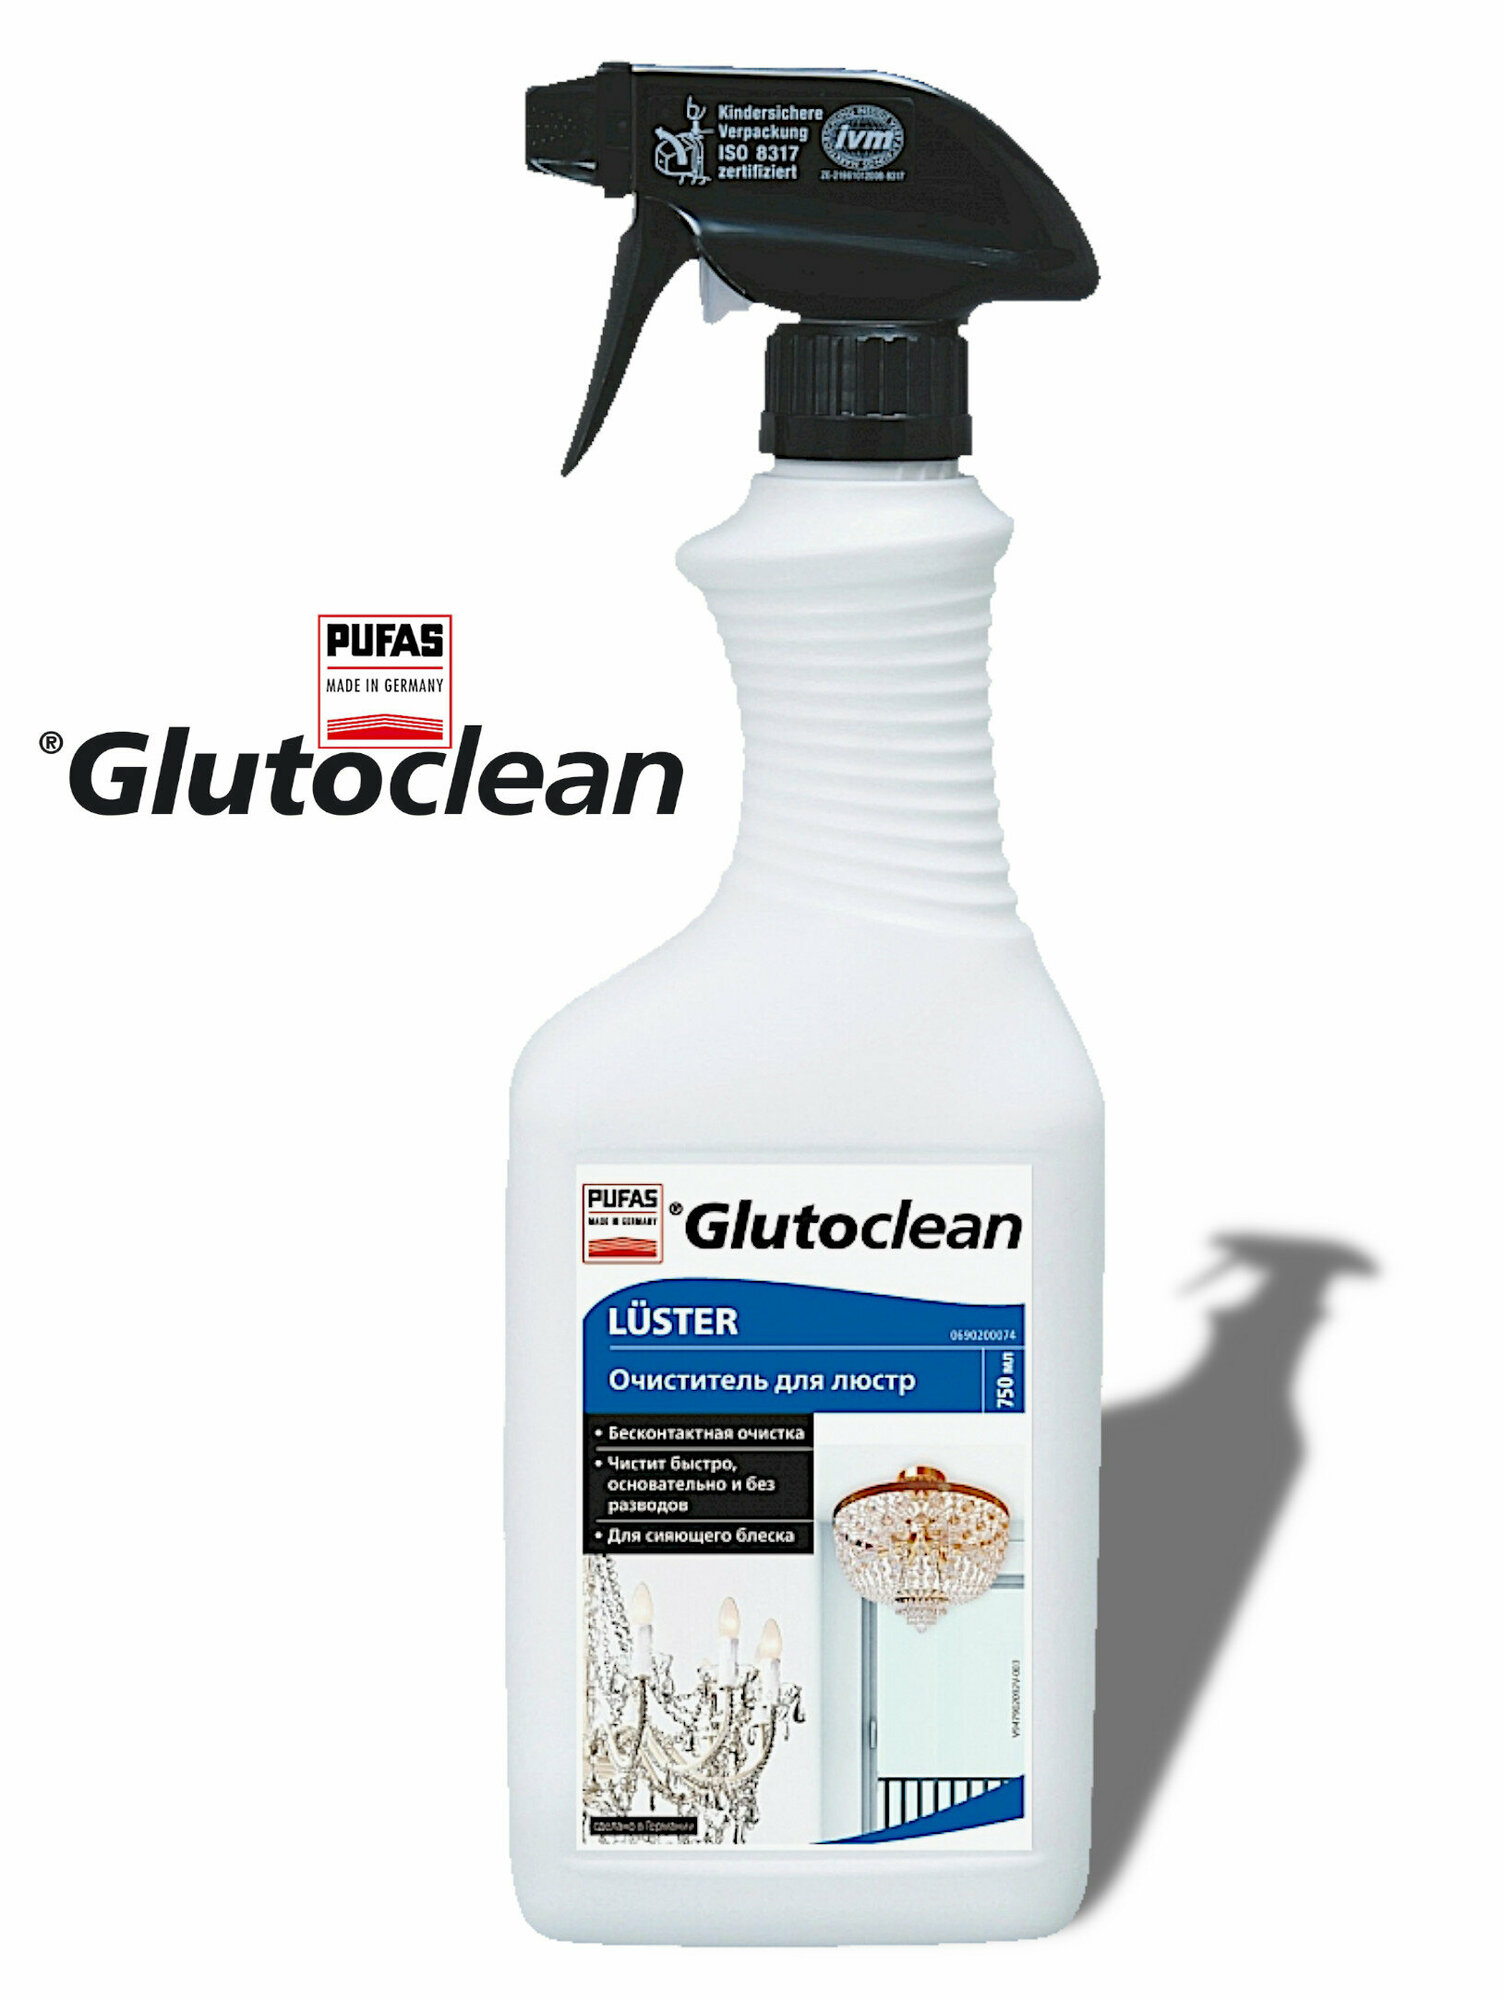 Очиститель для люстр, Pufas Glutoclean 750 мл.